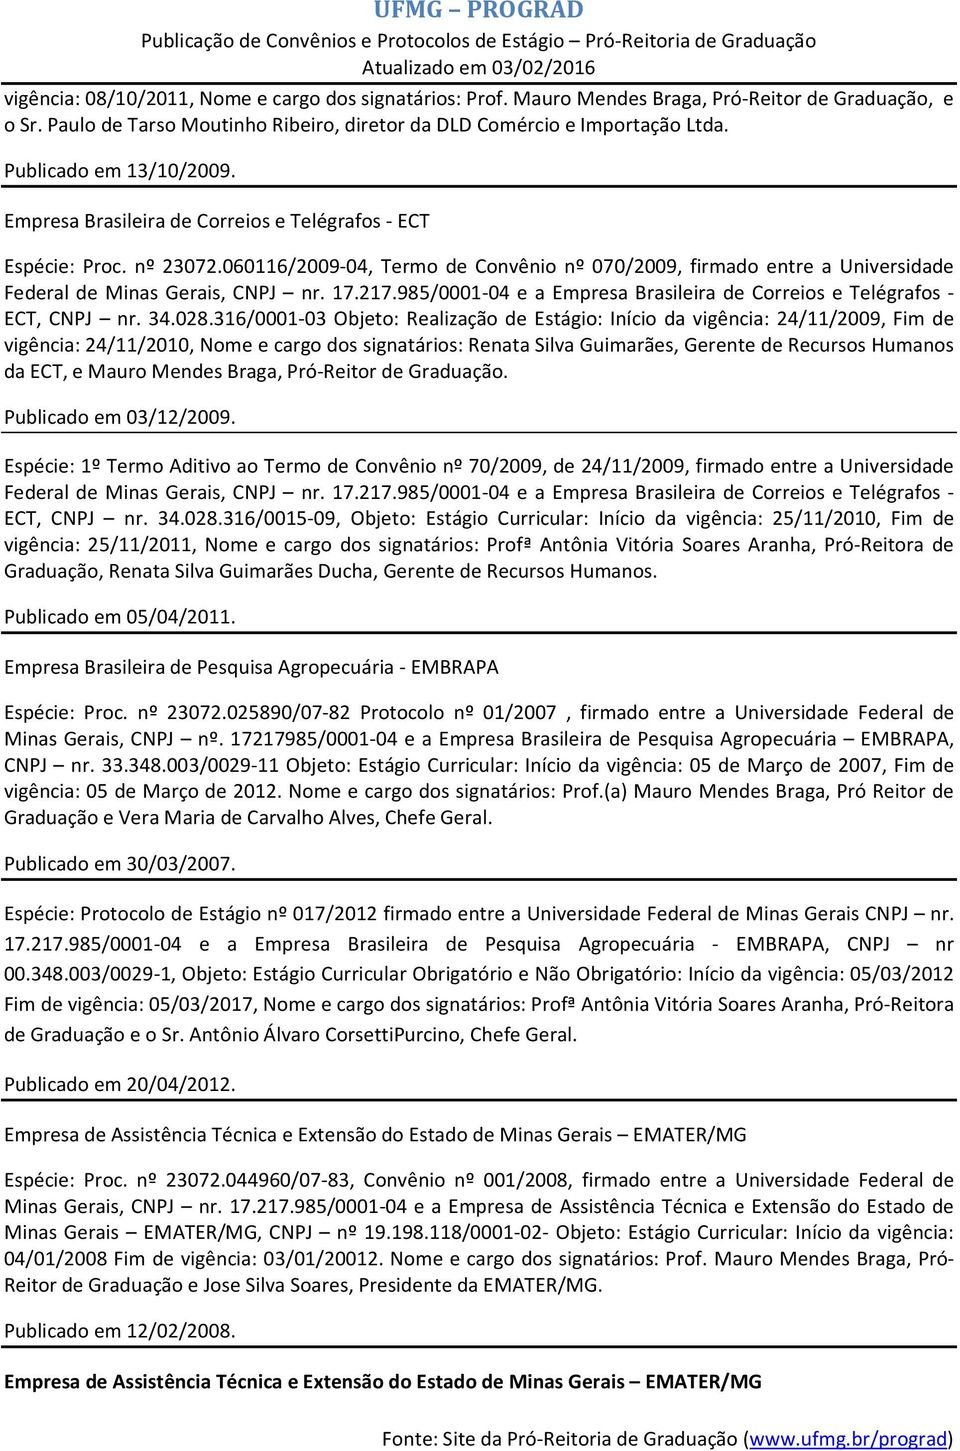 060116/2009-04, Termo de Convênio nº 070/2009, firmado entre a Universidade Federal de Minas Gerais, CNPJ nr. 17.217.985/0001-04 e a Empresa Brasileira de Correios e Telégrafos - ECT, CNPJ nr. 34.028.